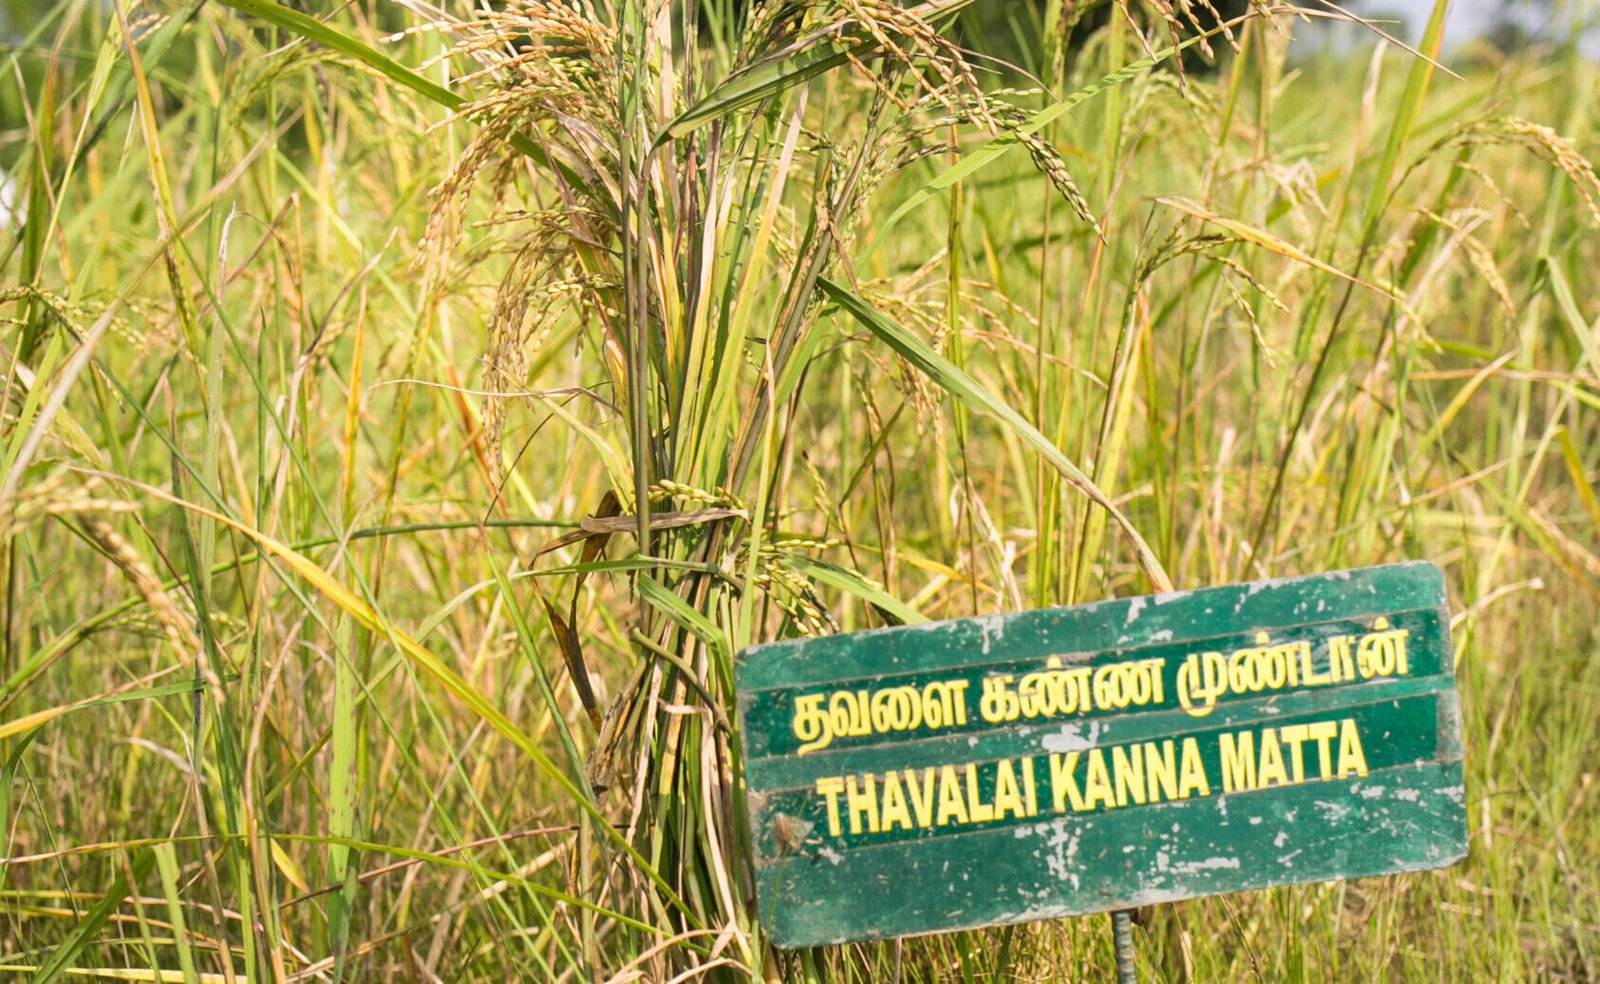 3.Thavalaikannamatta field-Dec 2022